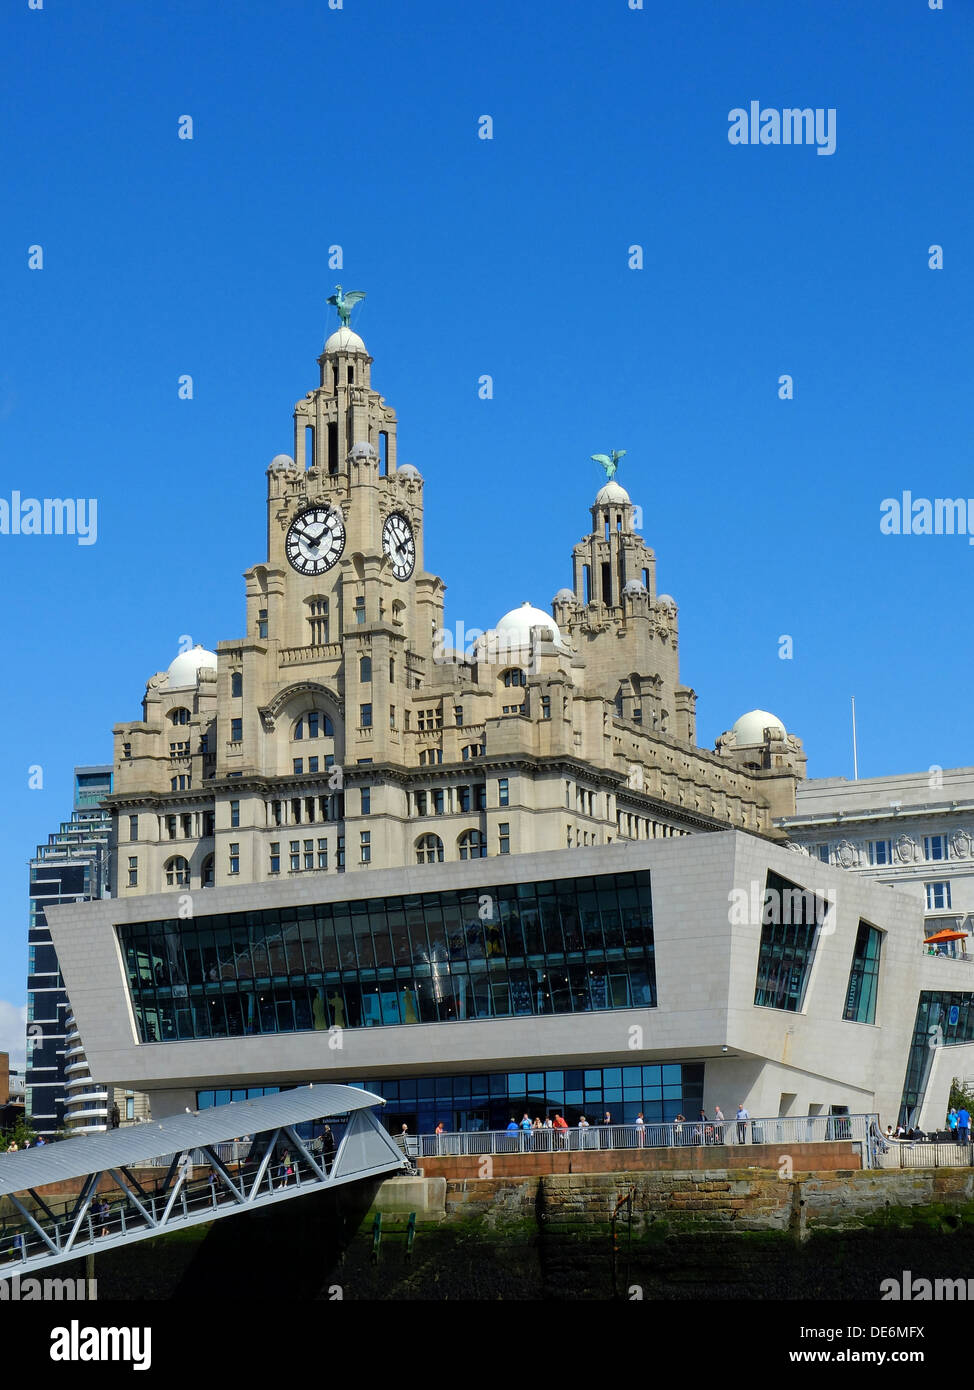 Inglaterra, Liverpool, vista desde el muelle hacia el Liver Building y Pier Head Foto de stock